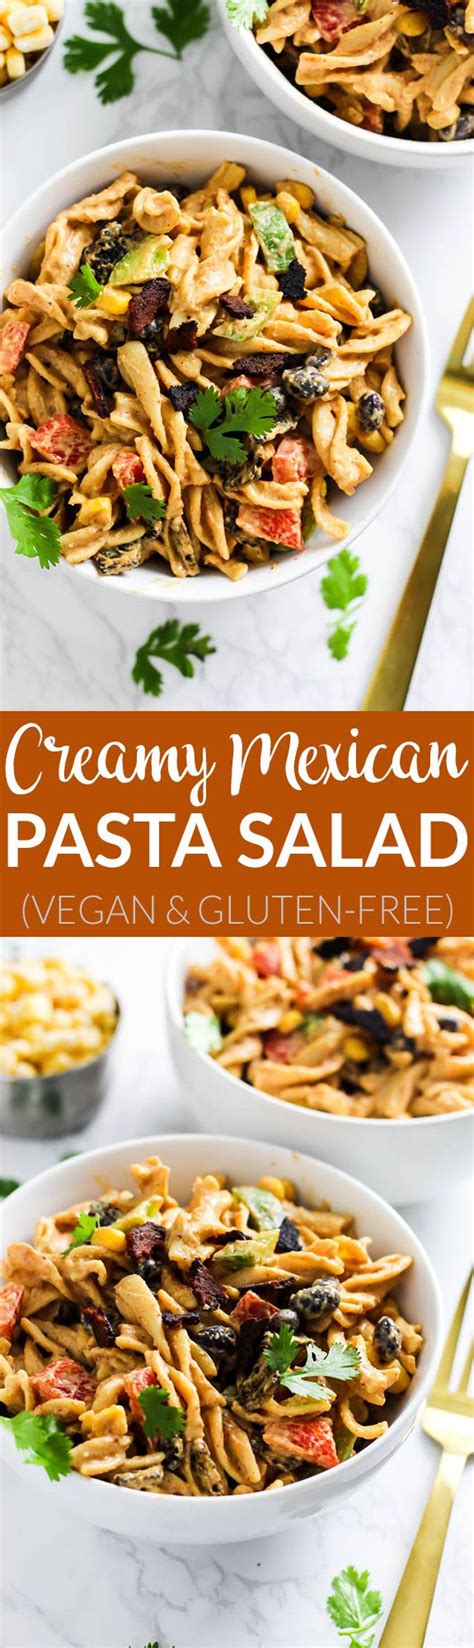 Creamy Vegan Mexican Pasta Salad Recipe Pasta Salad